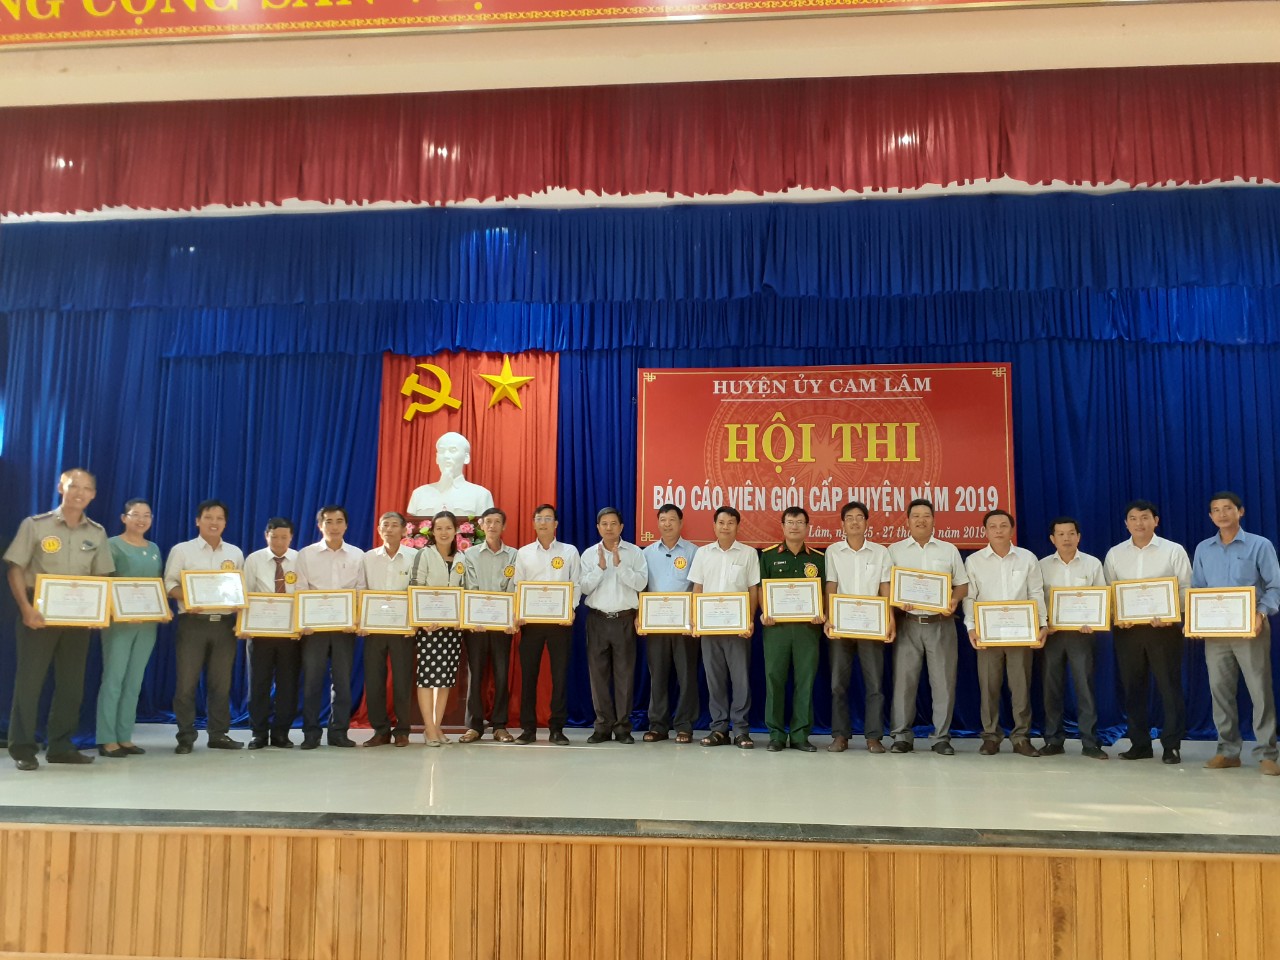 Huyện ủy Cam Lâm tổ chức Hội thi “Báo cáo viên giỏi năm 2019”